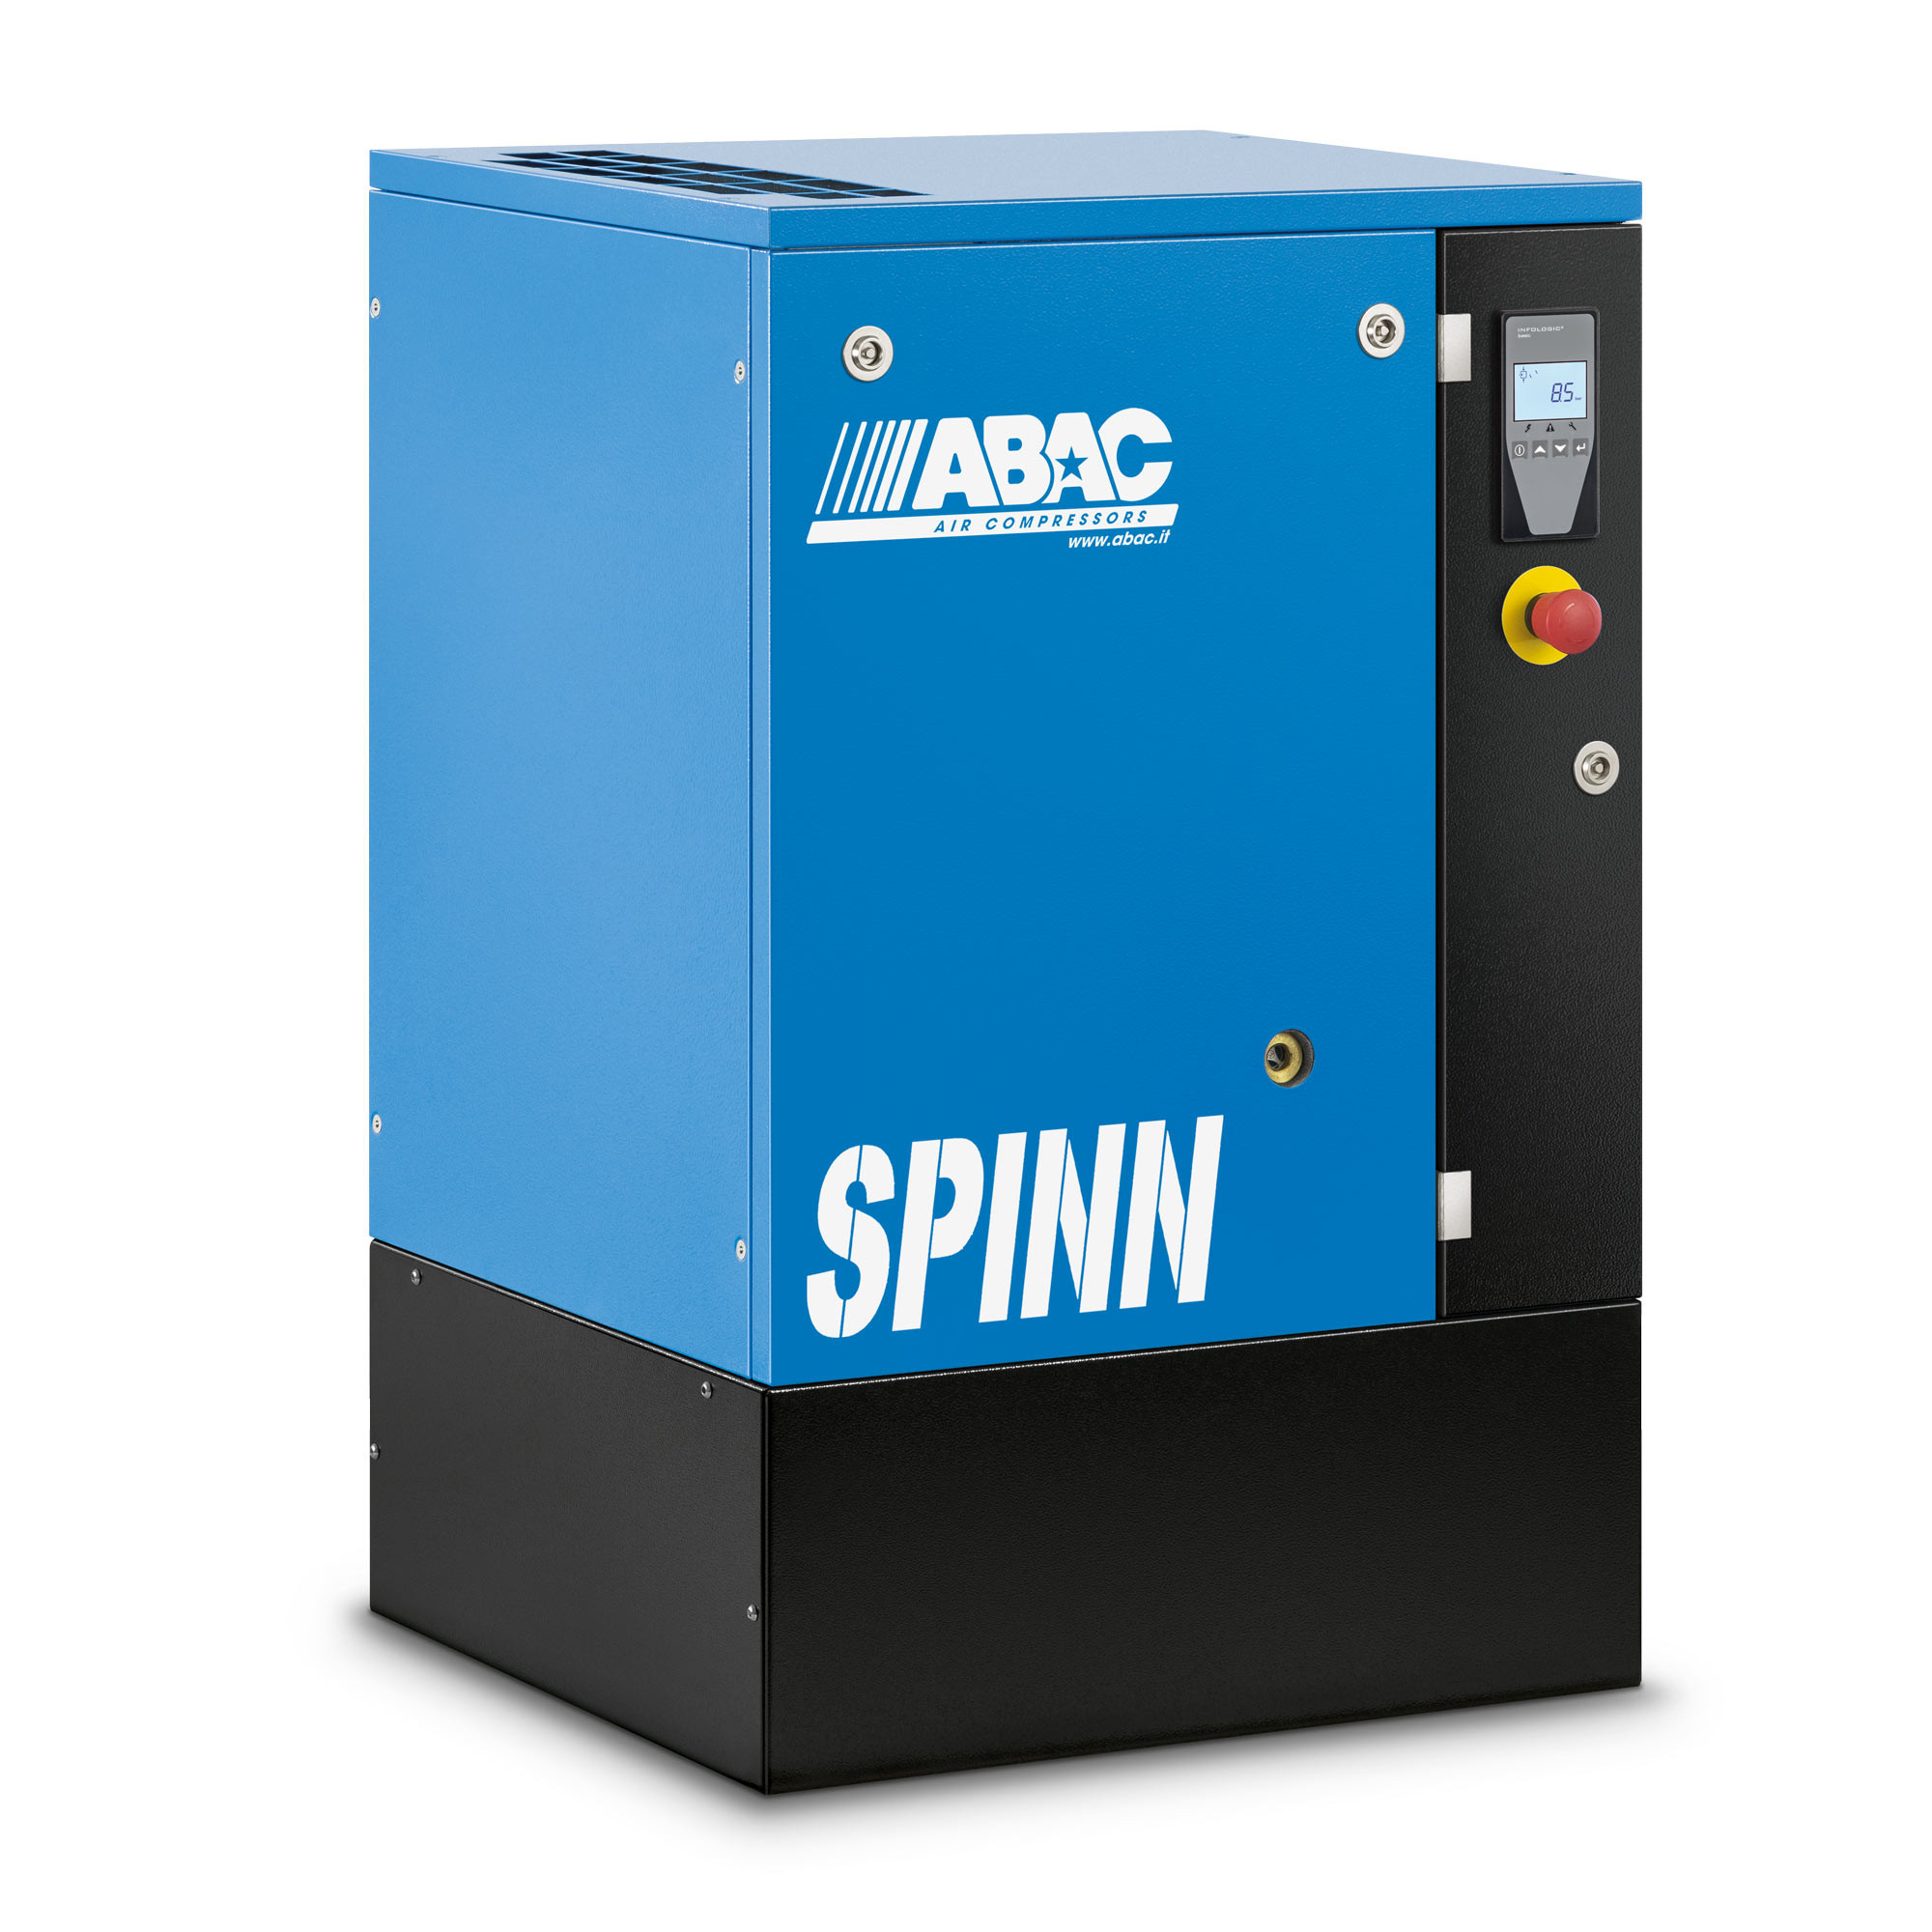 螺杆式空气压缩机- SPINN3 10 400/50K E CE地板安装12.9CFM 10Bar 4HP